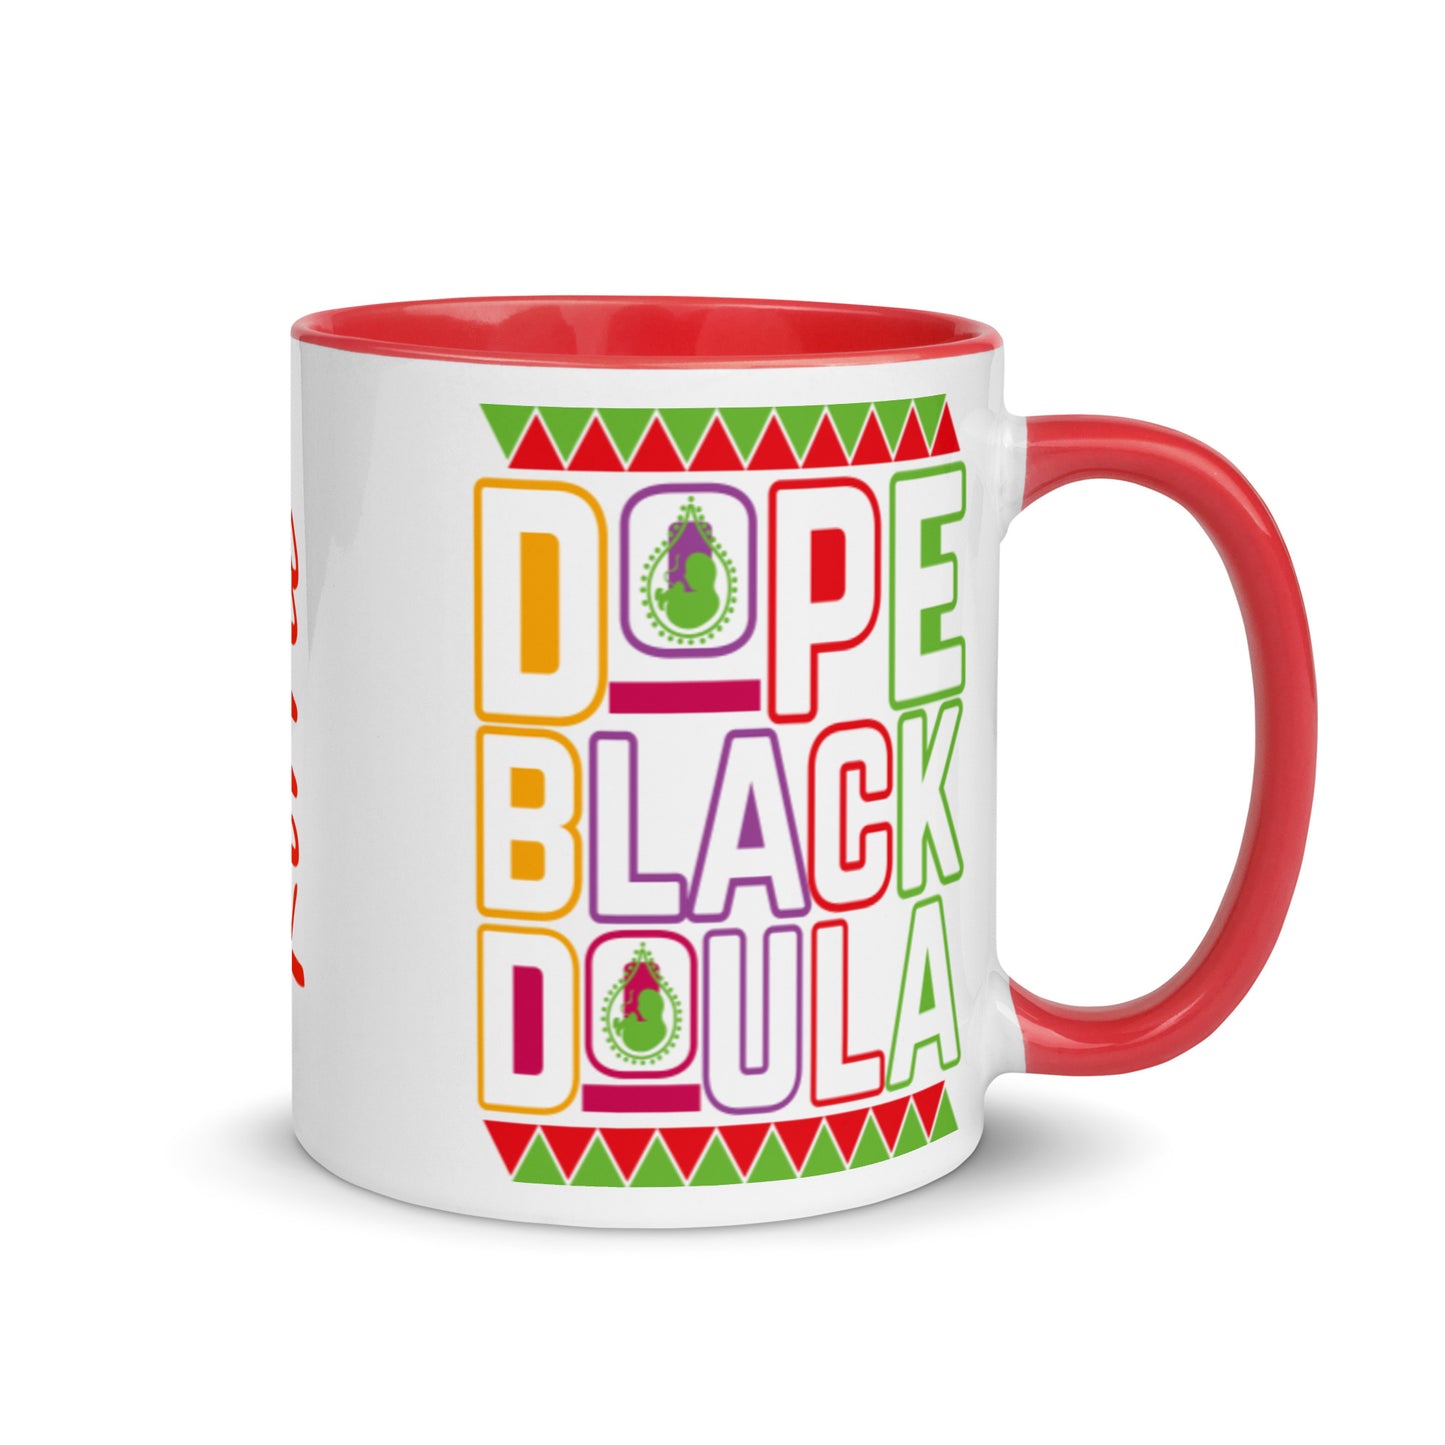 Dope Black Doula Mug